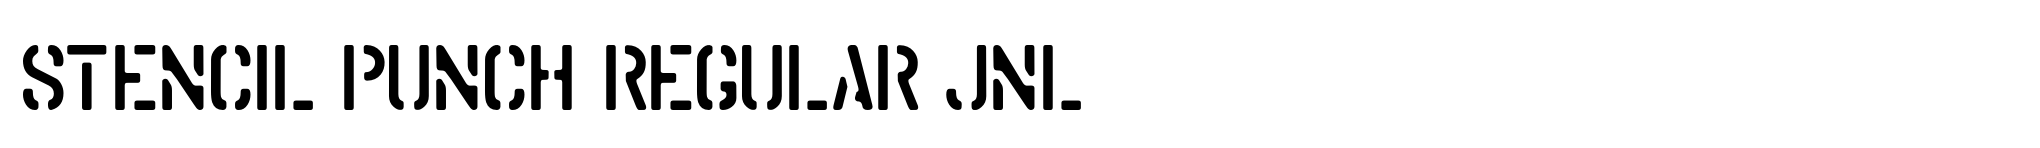 Stencil Punch Regular JNL image